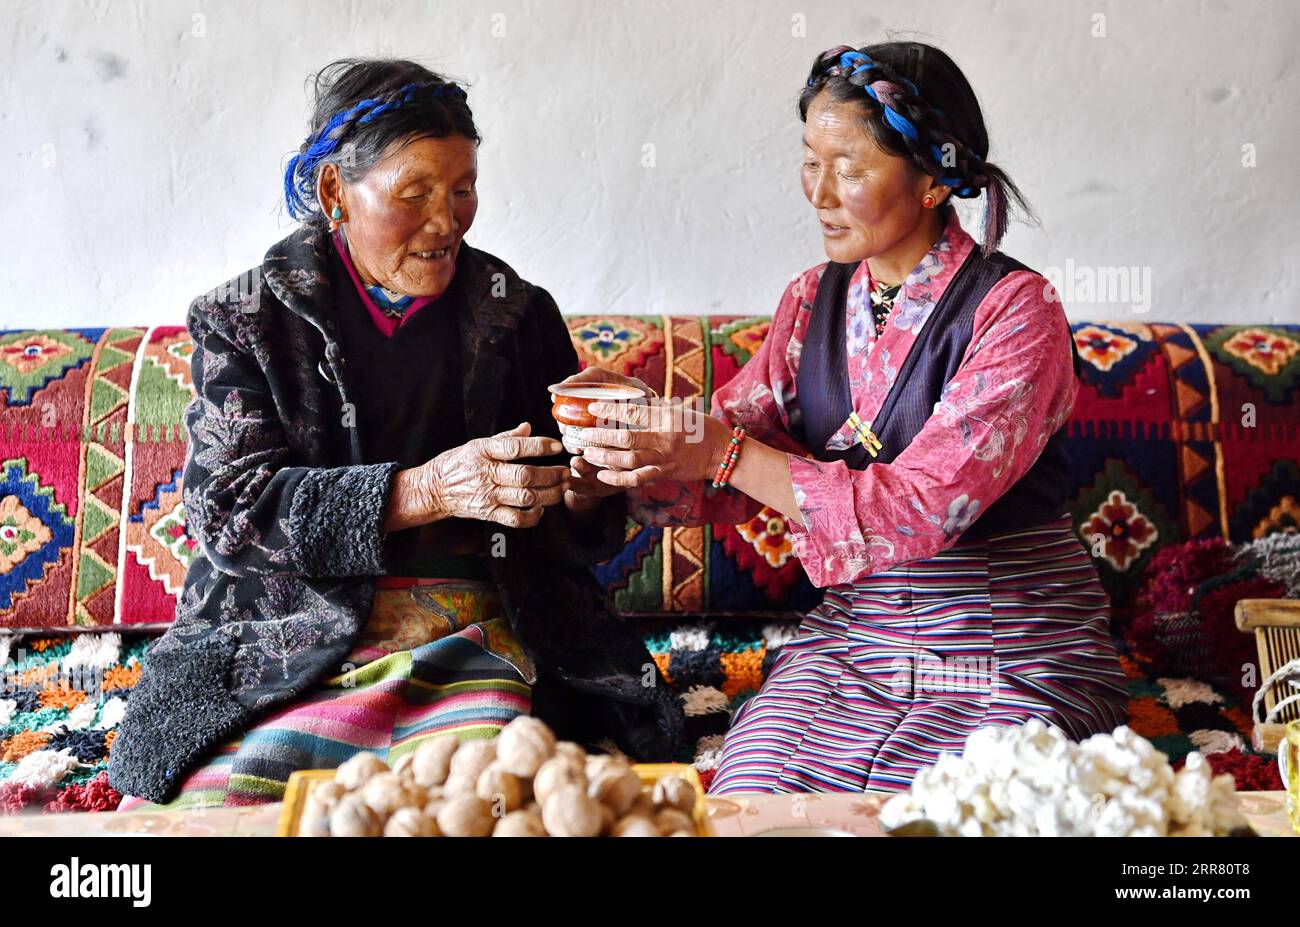 210411 -- XIGAZE, 11 aprile 2021 -- Lhapa L riceve una tazza di tè al burro da sua figlia a casa nel villaggio di Puga di Xigaze, nella regione autonoma del Tibet della Cina sud-occidentale, 20 marzo 2021. Lhapa, nato nel 1945, è un abitante del villaggio di Puga. Quando era bambina, sua madre divenne cieca a causa del lavoro eccessivo e perse la capacità di lavorare. Il proprietario della servitù l'ha cacciata dal maniero, e la madre di Lhapa ha dovuto implorare ovunque con sua sorella per vivere. Nel 1959, durante la riforma democratica in Tibet, la famiglia Lhapa si riunì e assegnò 24 mu circa 1,6 ettari di terreno, sei pecore e due mucche Foto Stock